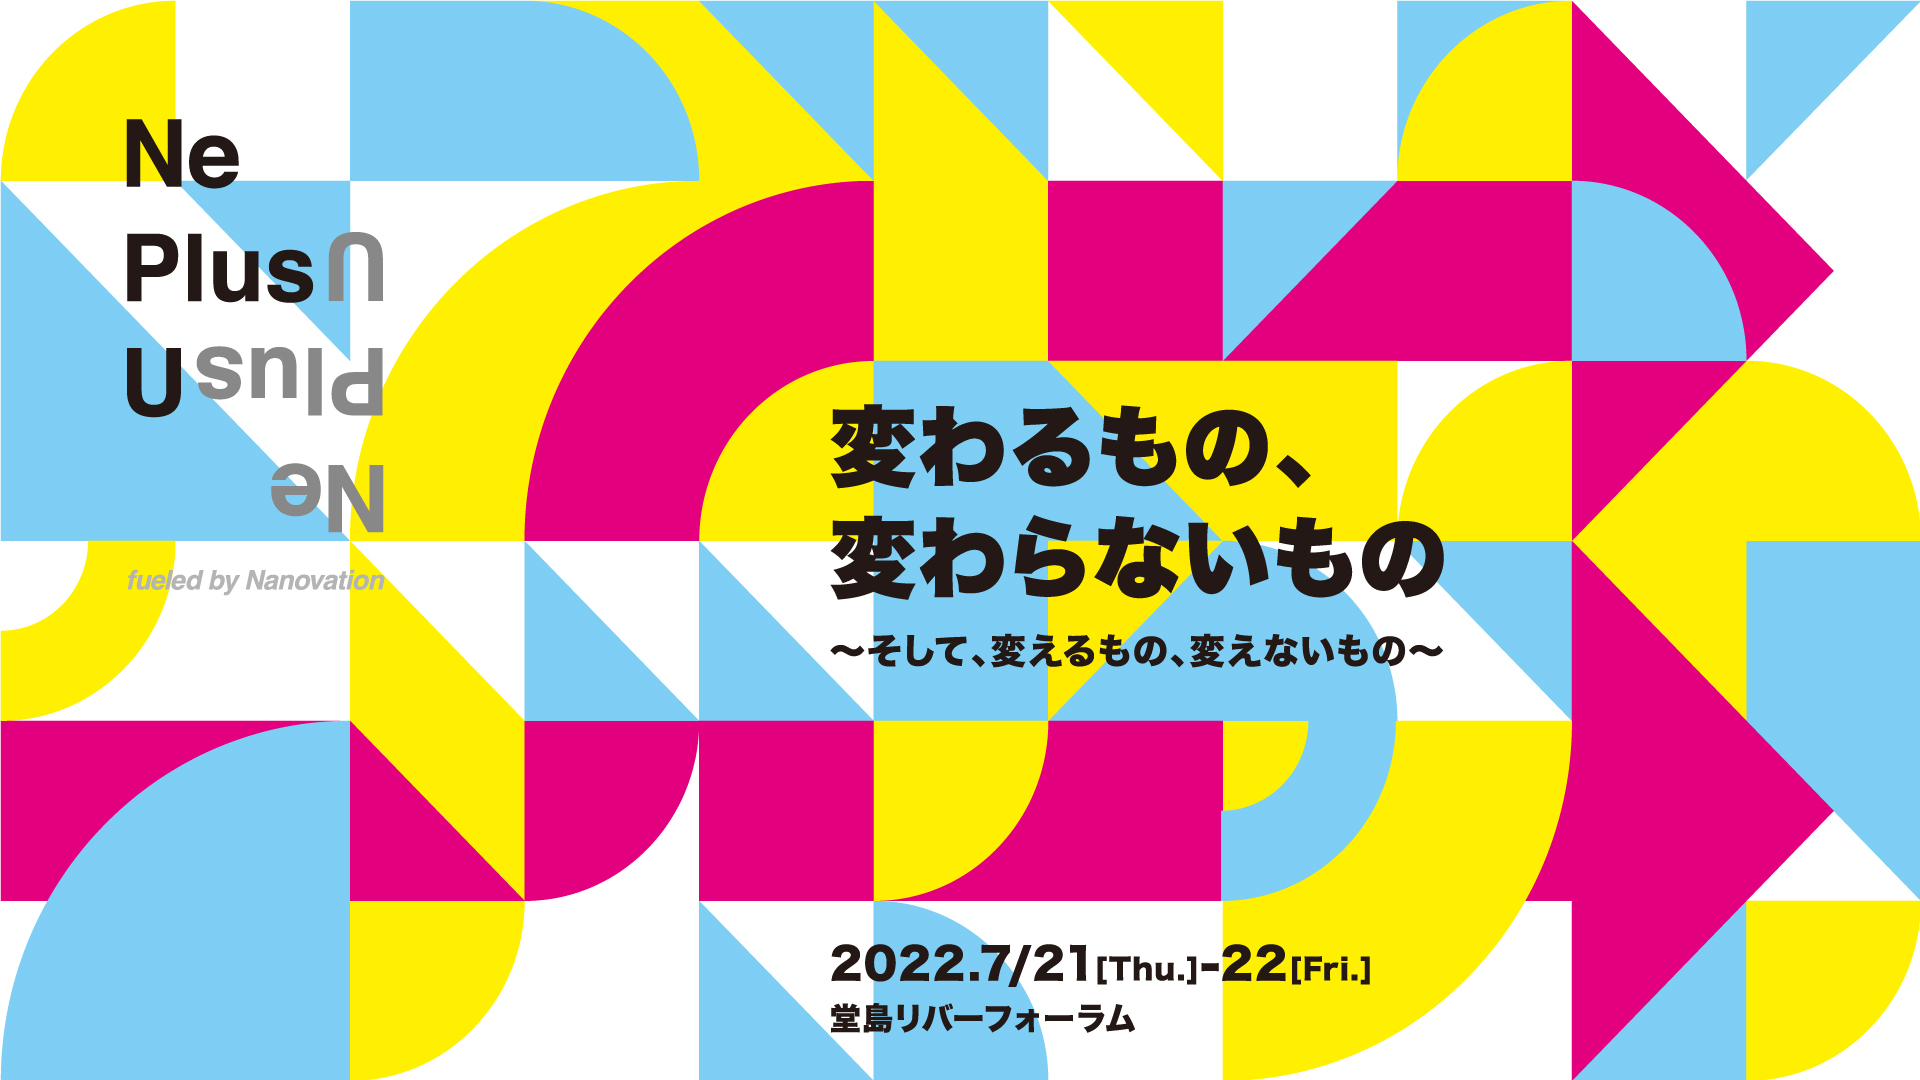 Ne Plus U 大阪 2022.7/21(Thu.)-22(Fri.)